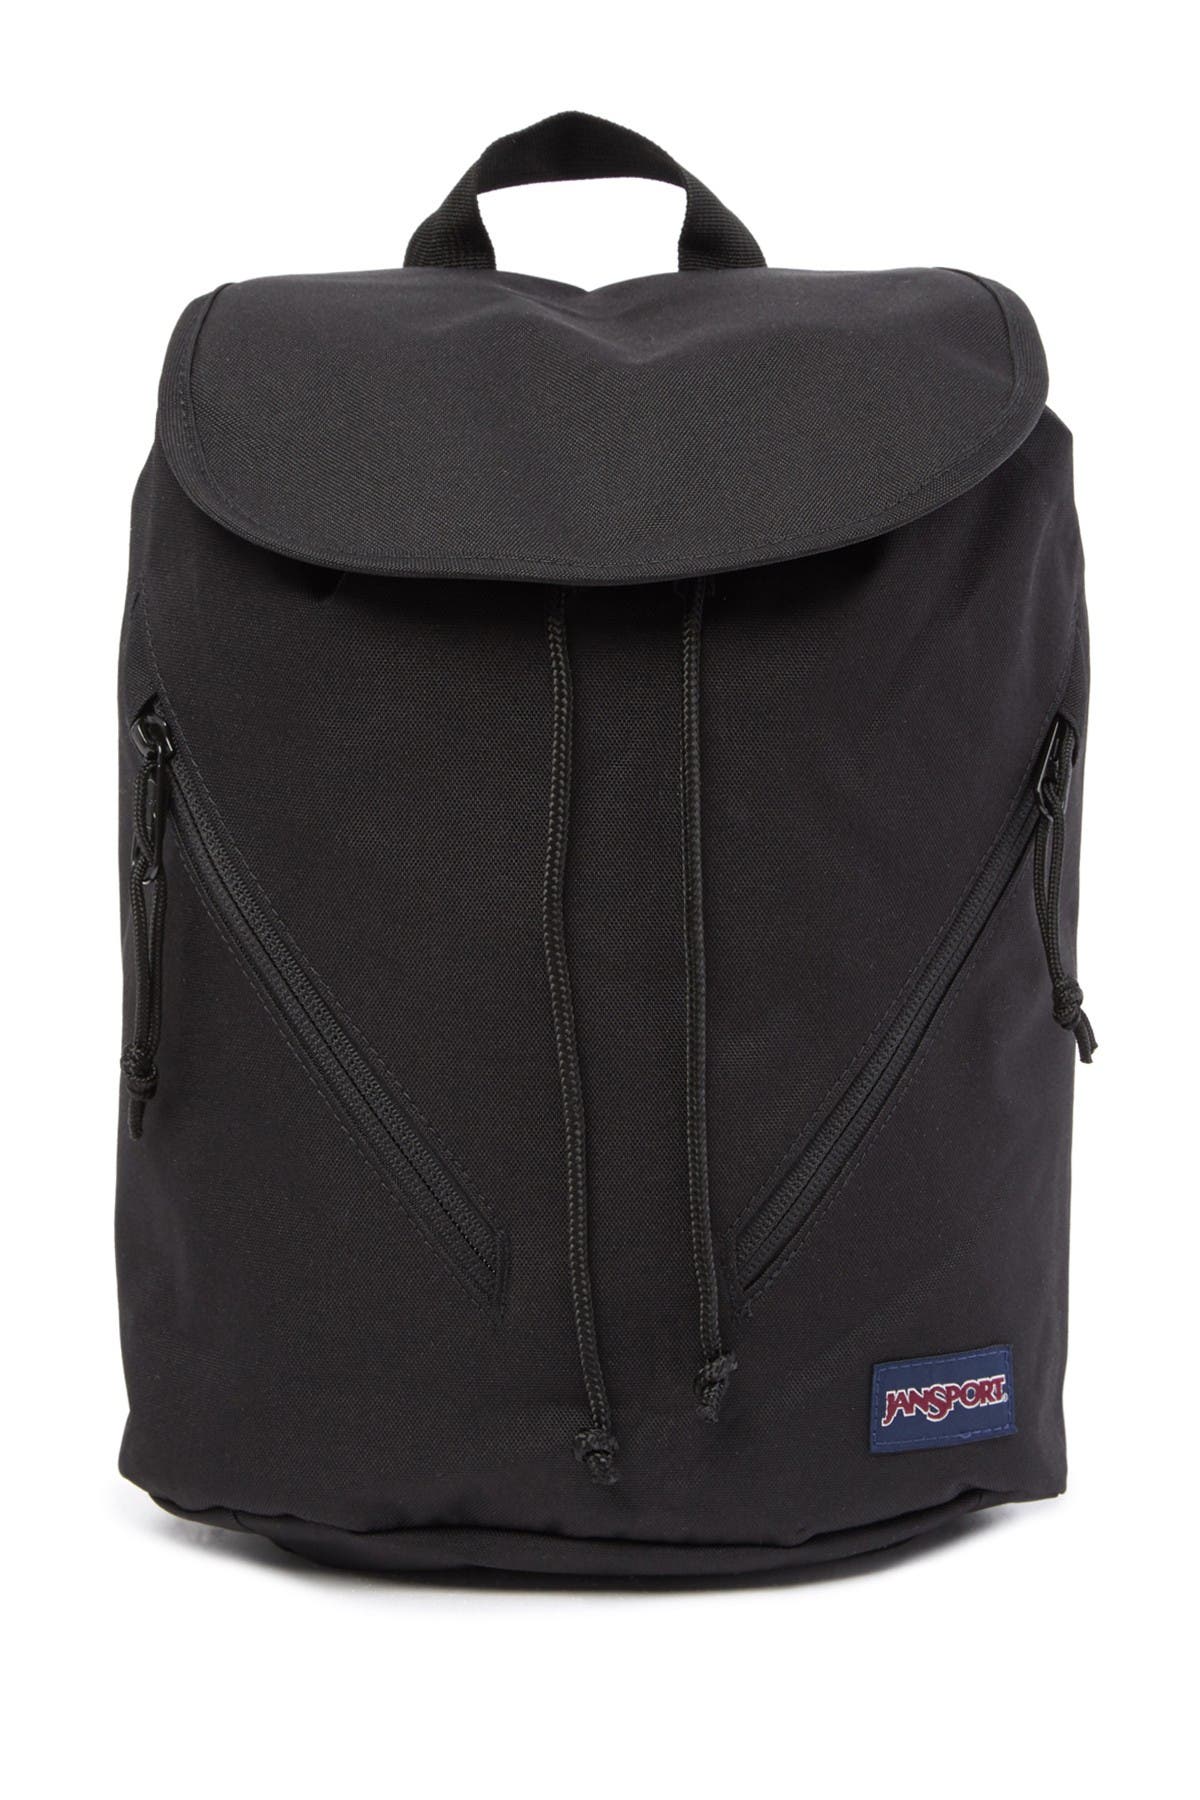 jansport hartwell backpack